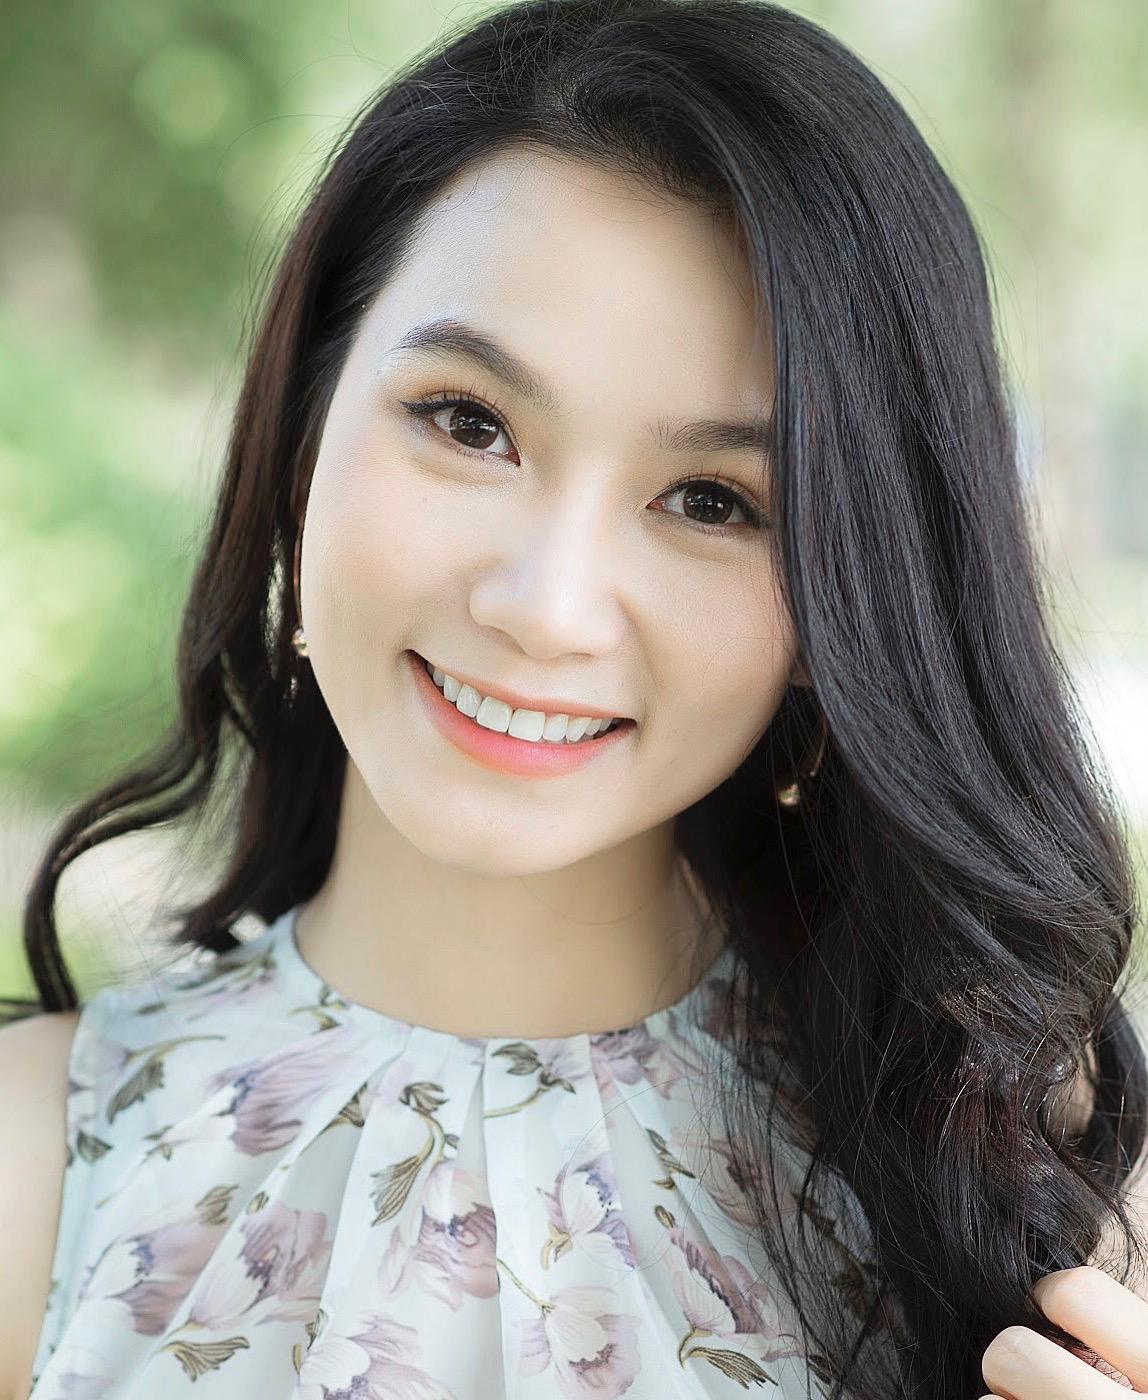 Nữ diễn viên Lương Giang quen mặt của VTV xuất hiện với vai trò mới sau thời gian dài kín tiếng - Ảnh 1.